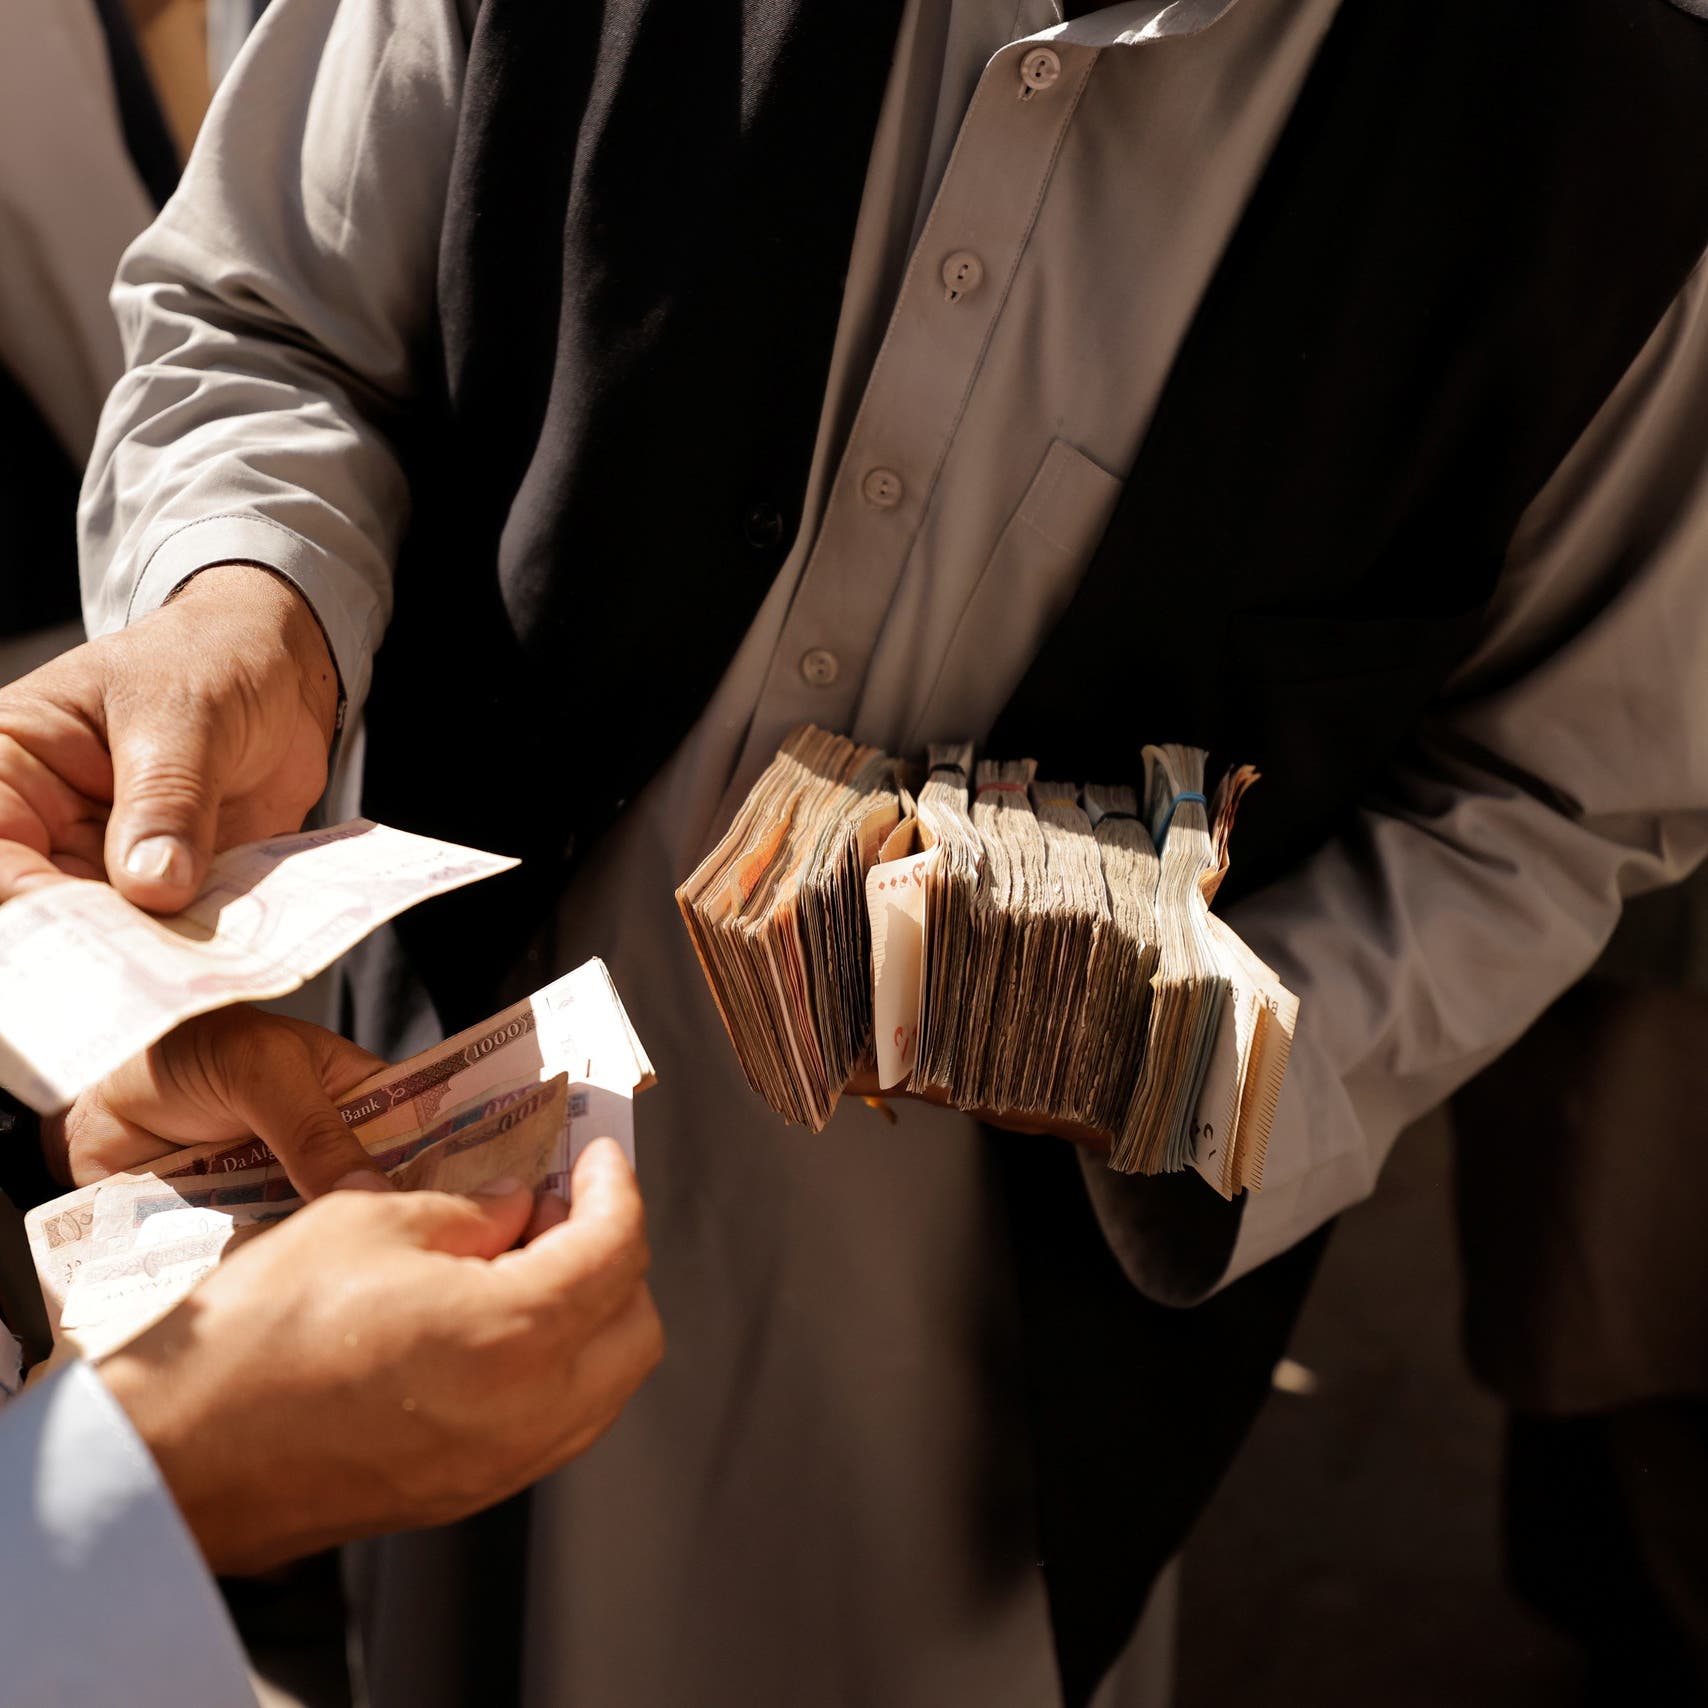 طالبان تبدأ في دفع الرواتب المتأخرة لموظفي القطاع العام